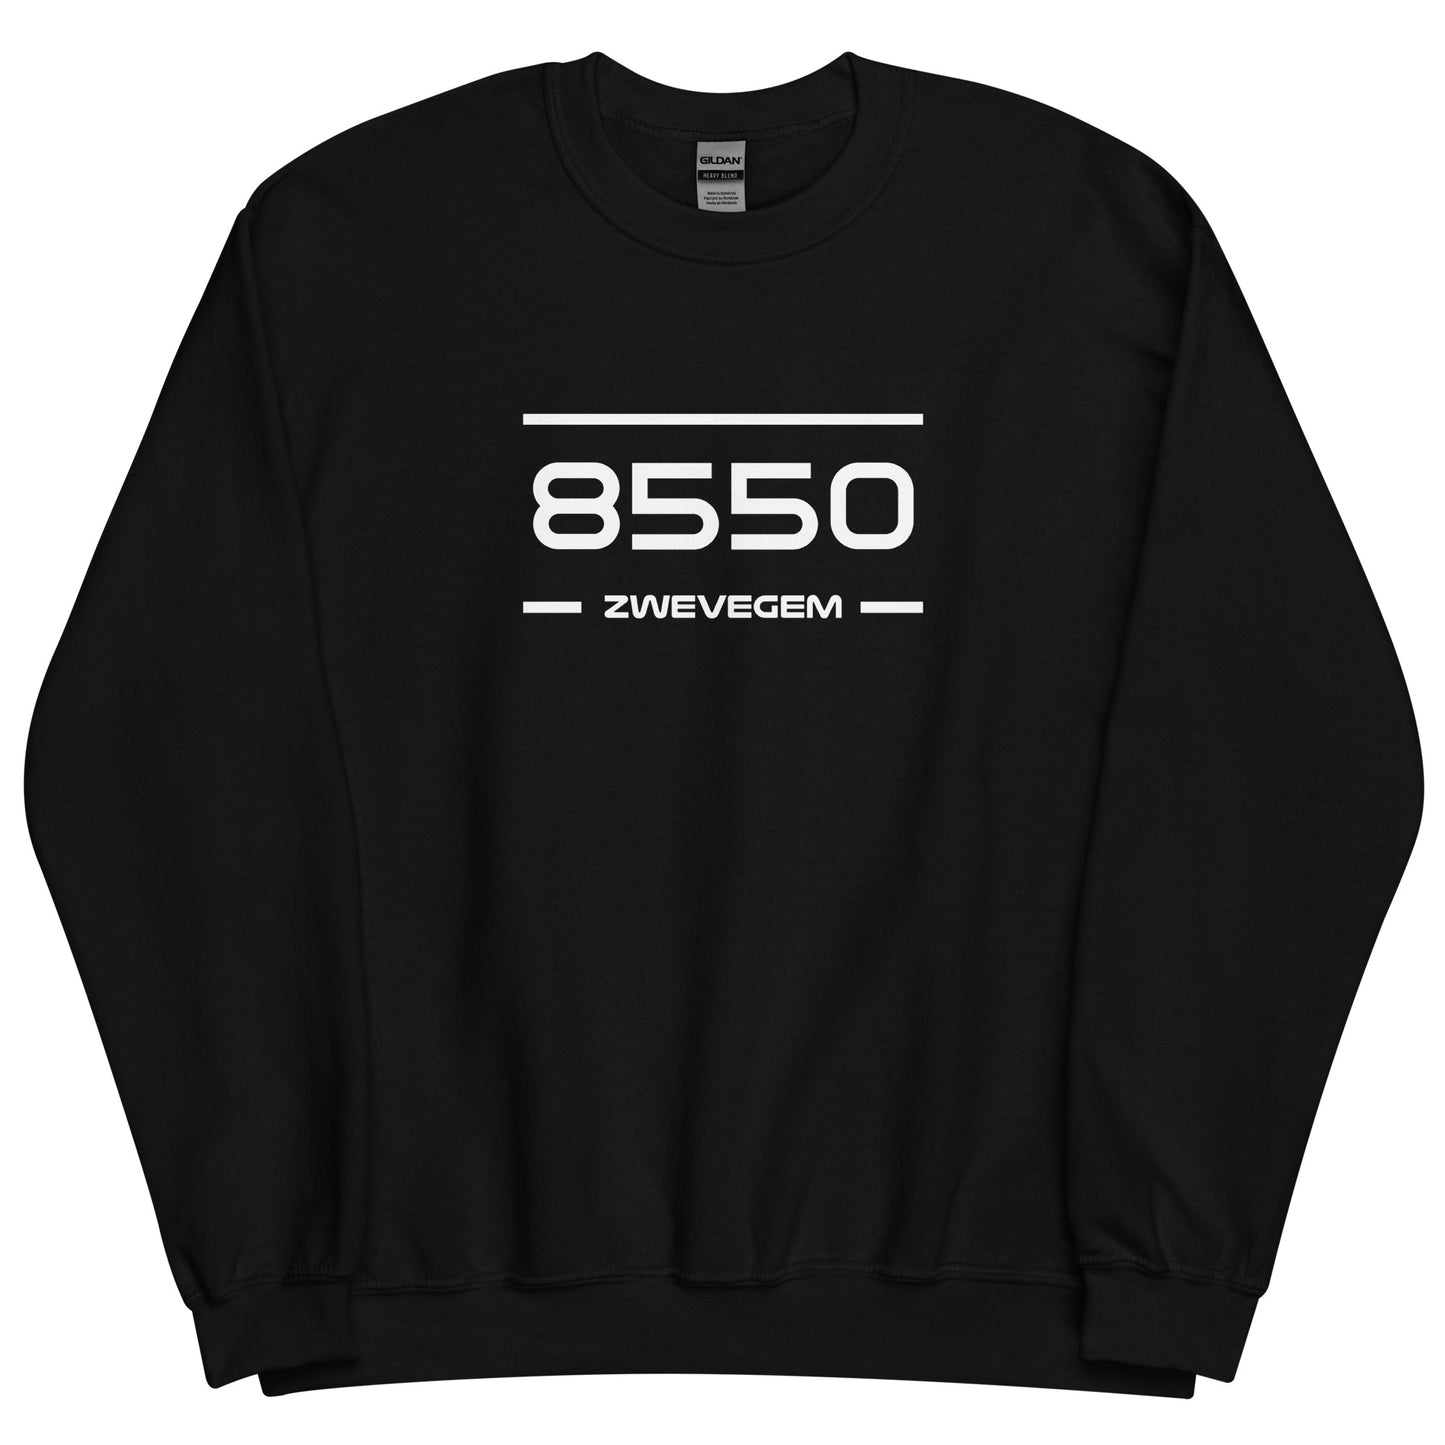 Sweater - 8550 - Zwevegem (M/V)